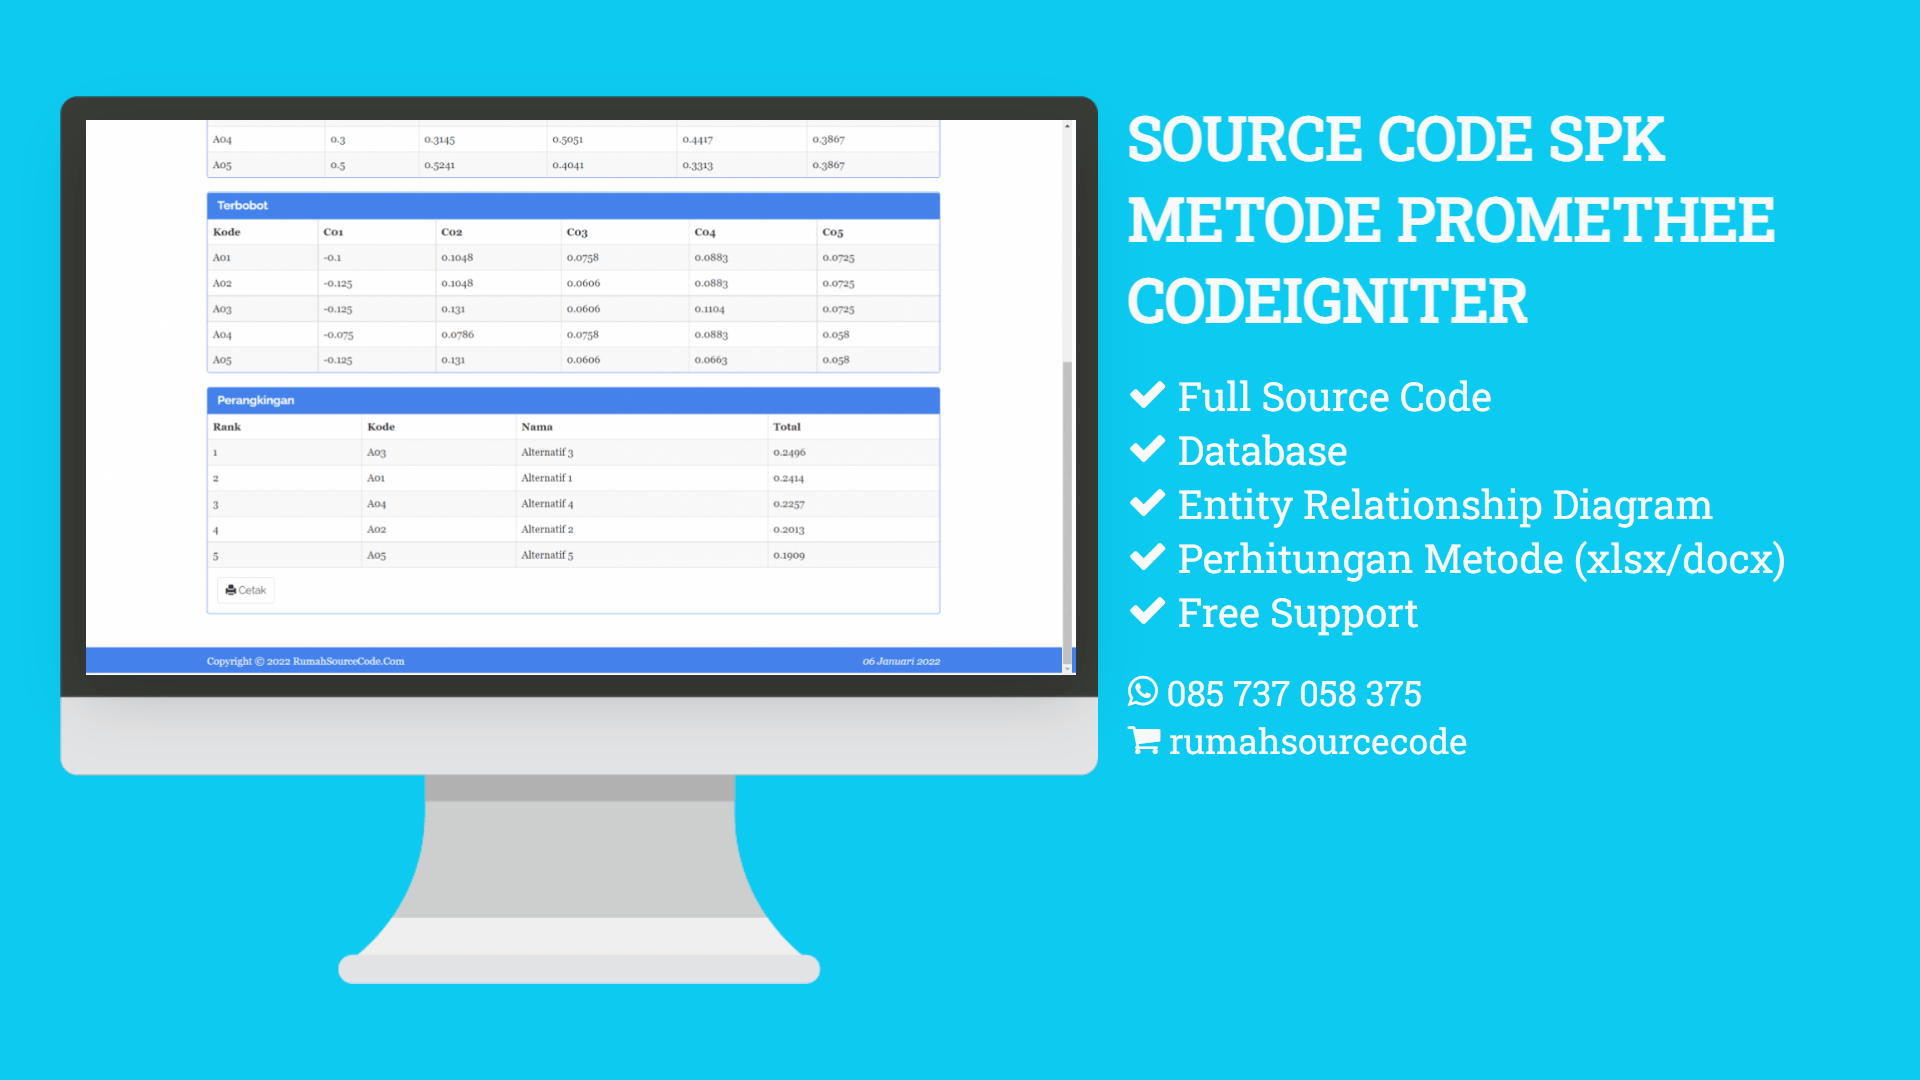 Source Code SPK Metode PROMETHEE CodeIgniter